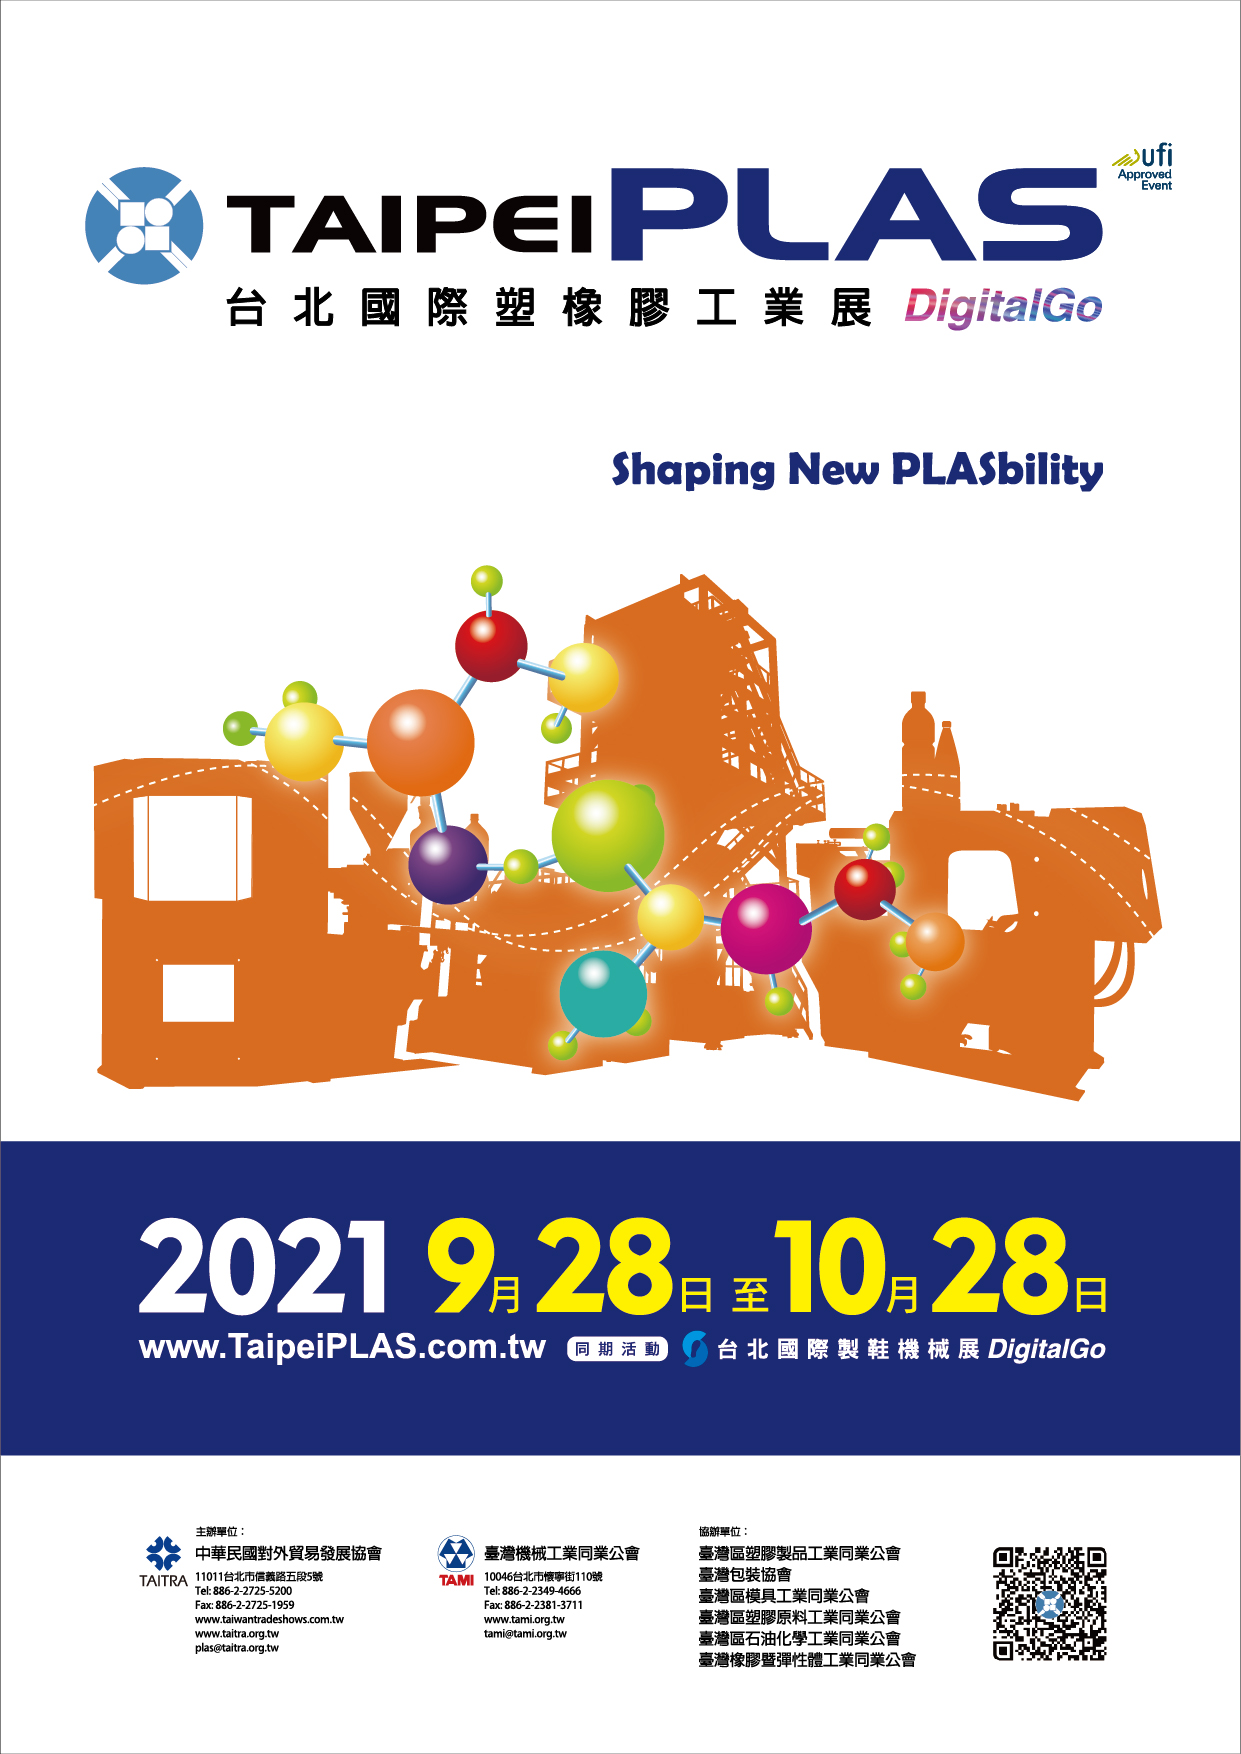 Тайбэй Plas Digital Go (формирование новой пластичности)